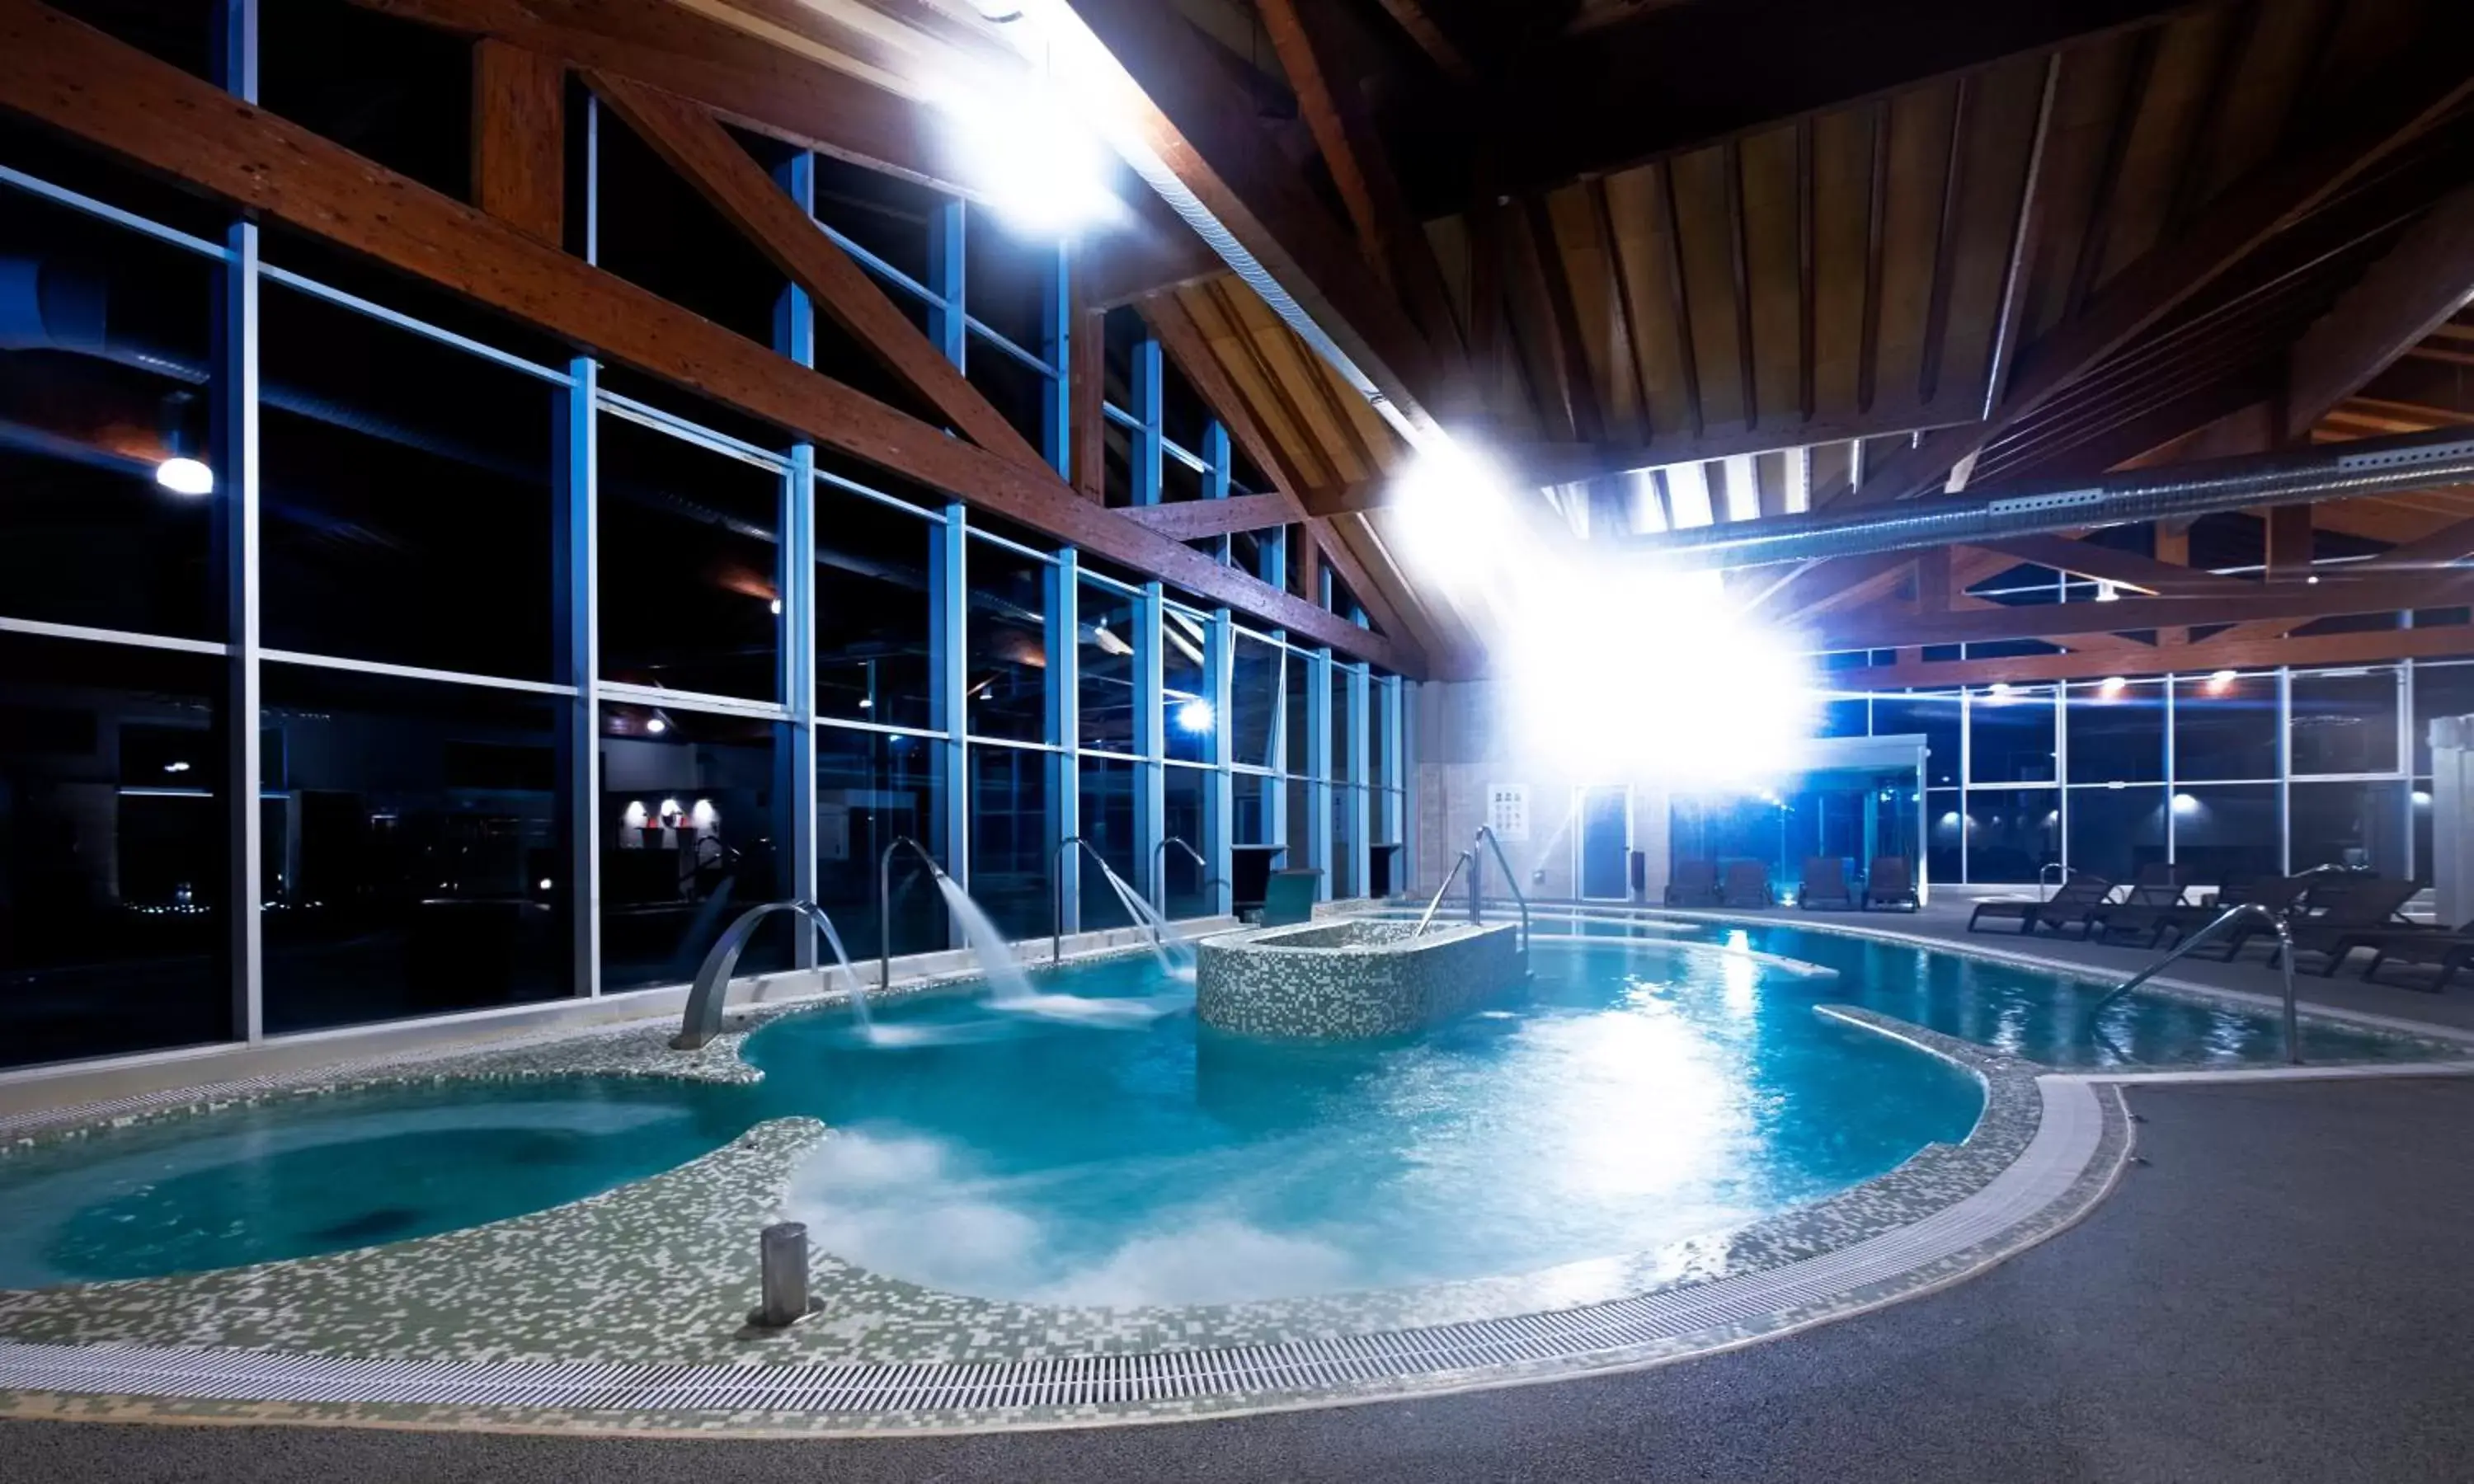 Hot Tub, Swimming Pool in Hotel Spa Attica21 Villalba